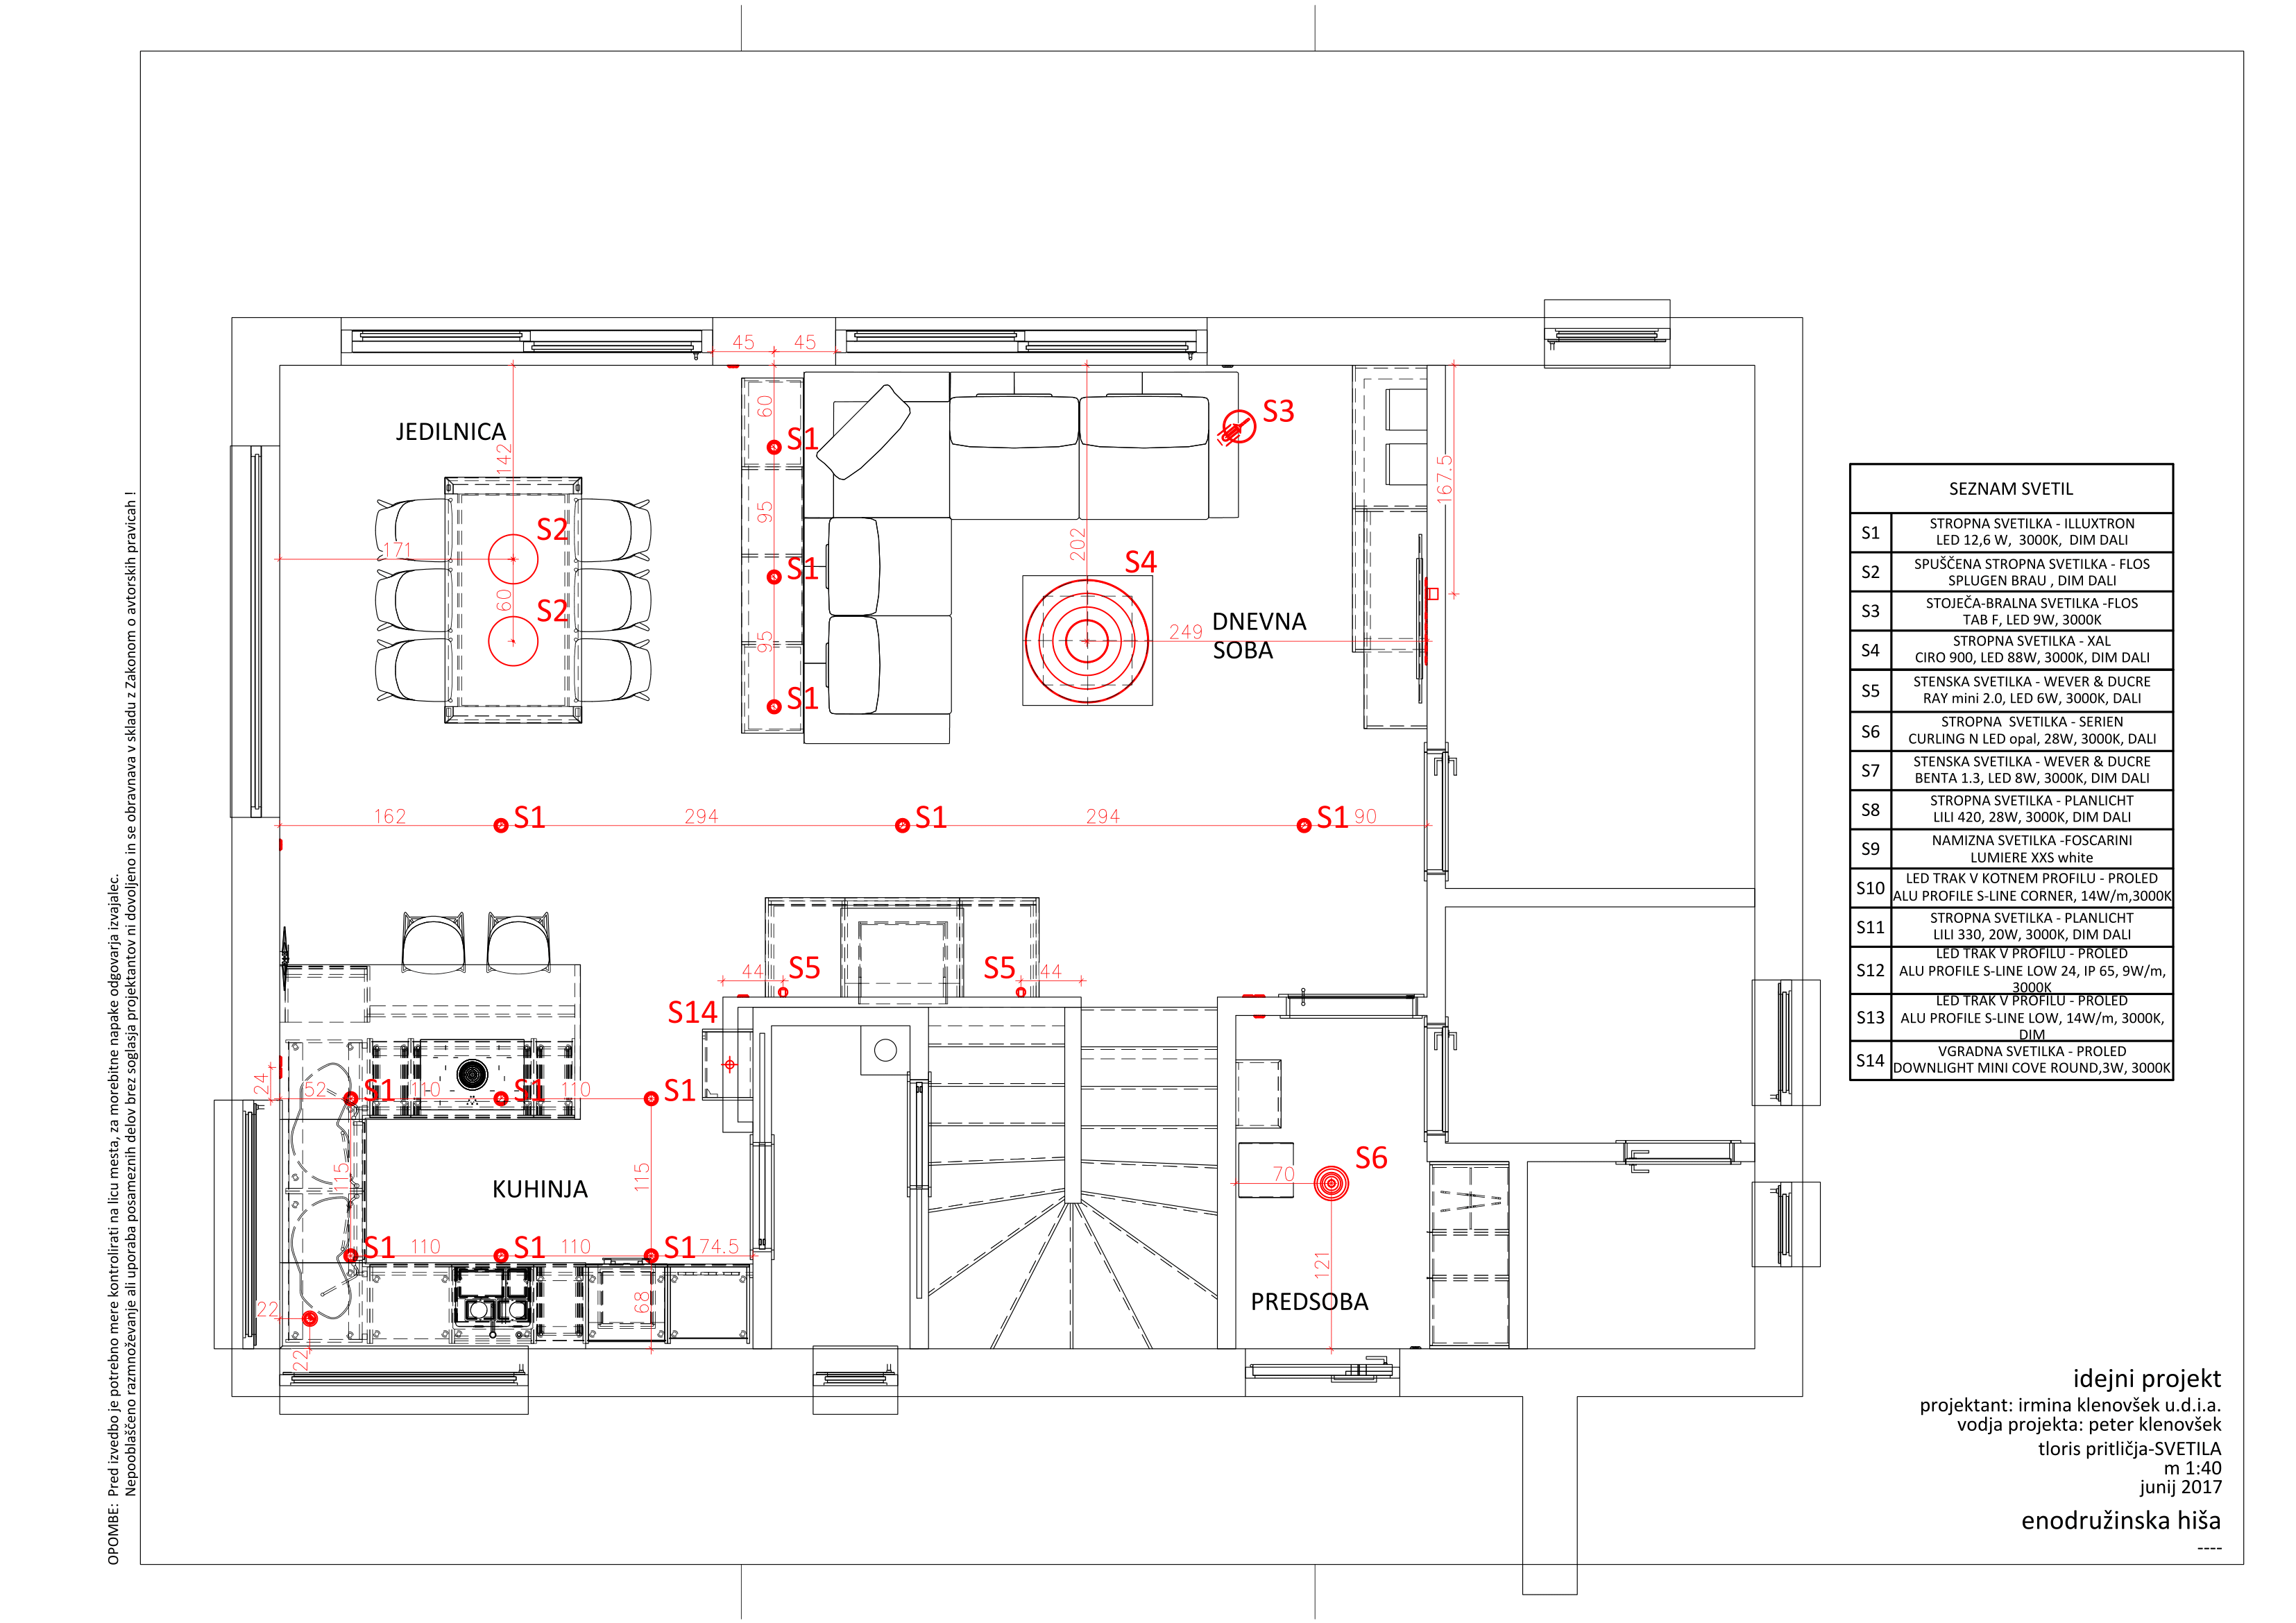 Design of interior design of rooms
